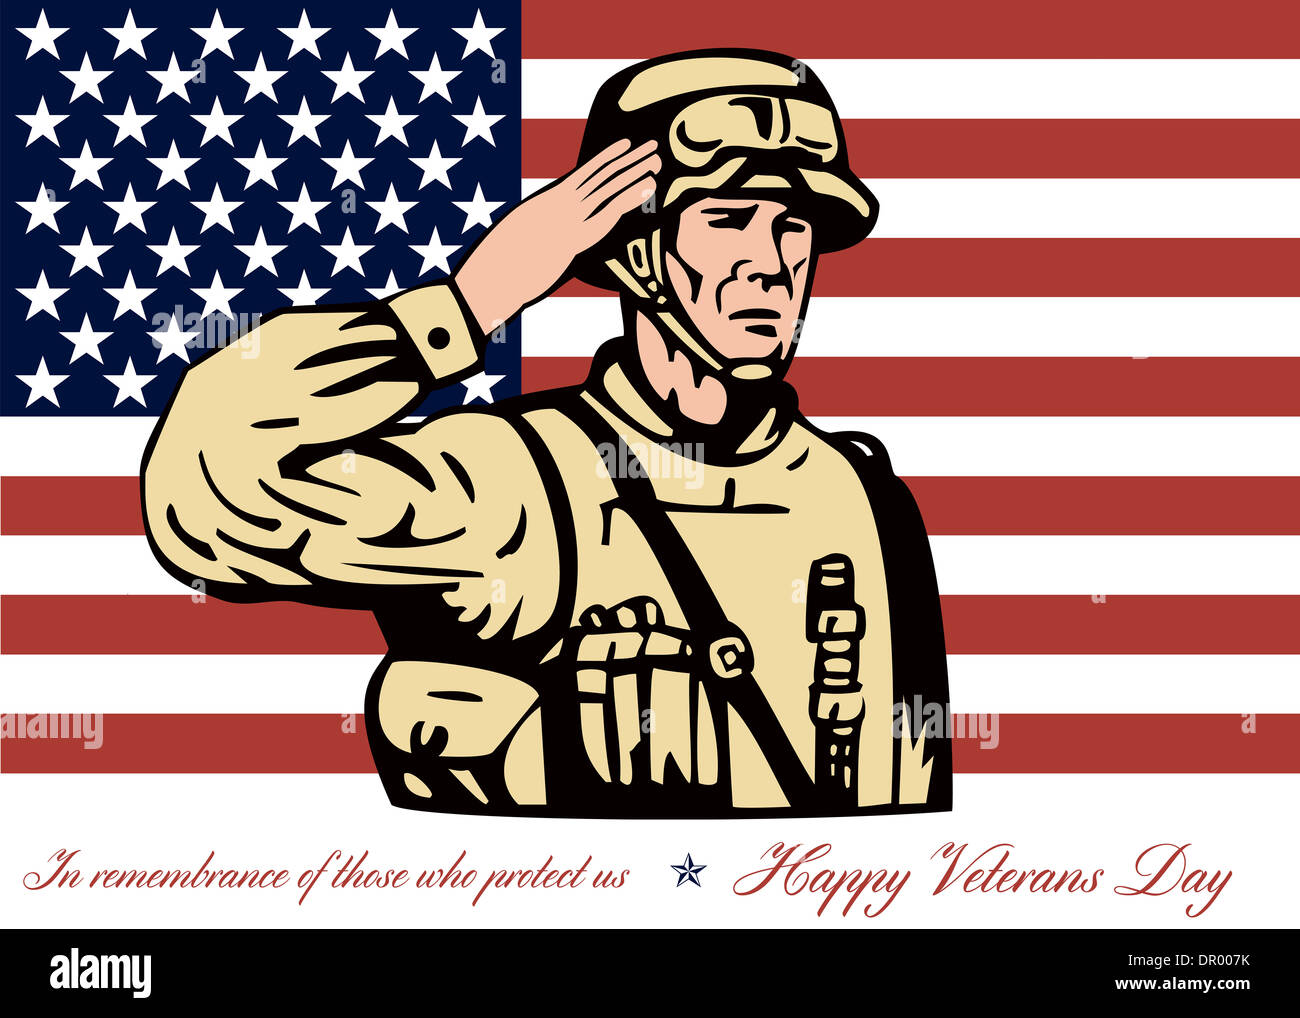 Grußkarte-Plakat mit Abbildung der ein amerikanischer Soldat Soldaten salutieren mit Sternen und Streifen-Flagge im Hintergrund glücklich Veterans Day in Erinnerung an diejenigen, die uns zu schützen. Stockfoto